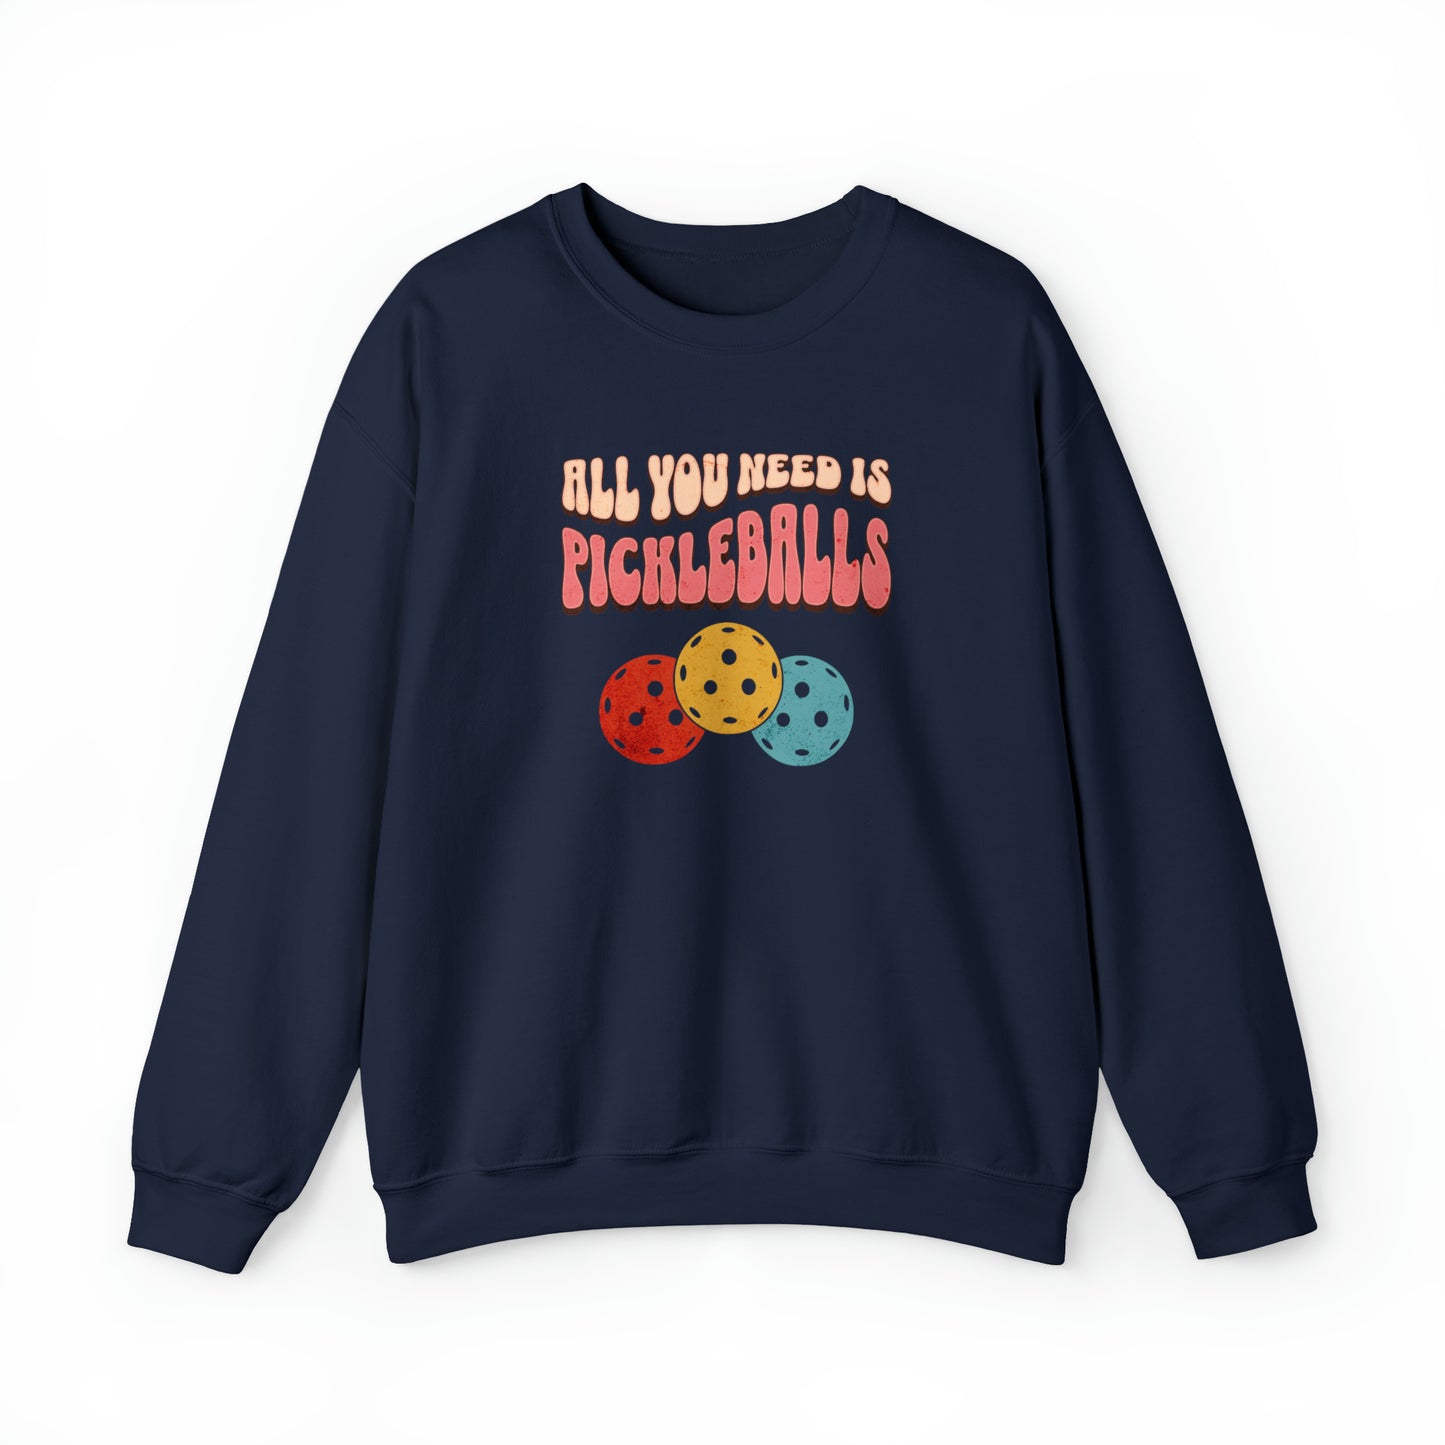 All You Need is Pickleballs Sweatshirt